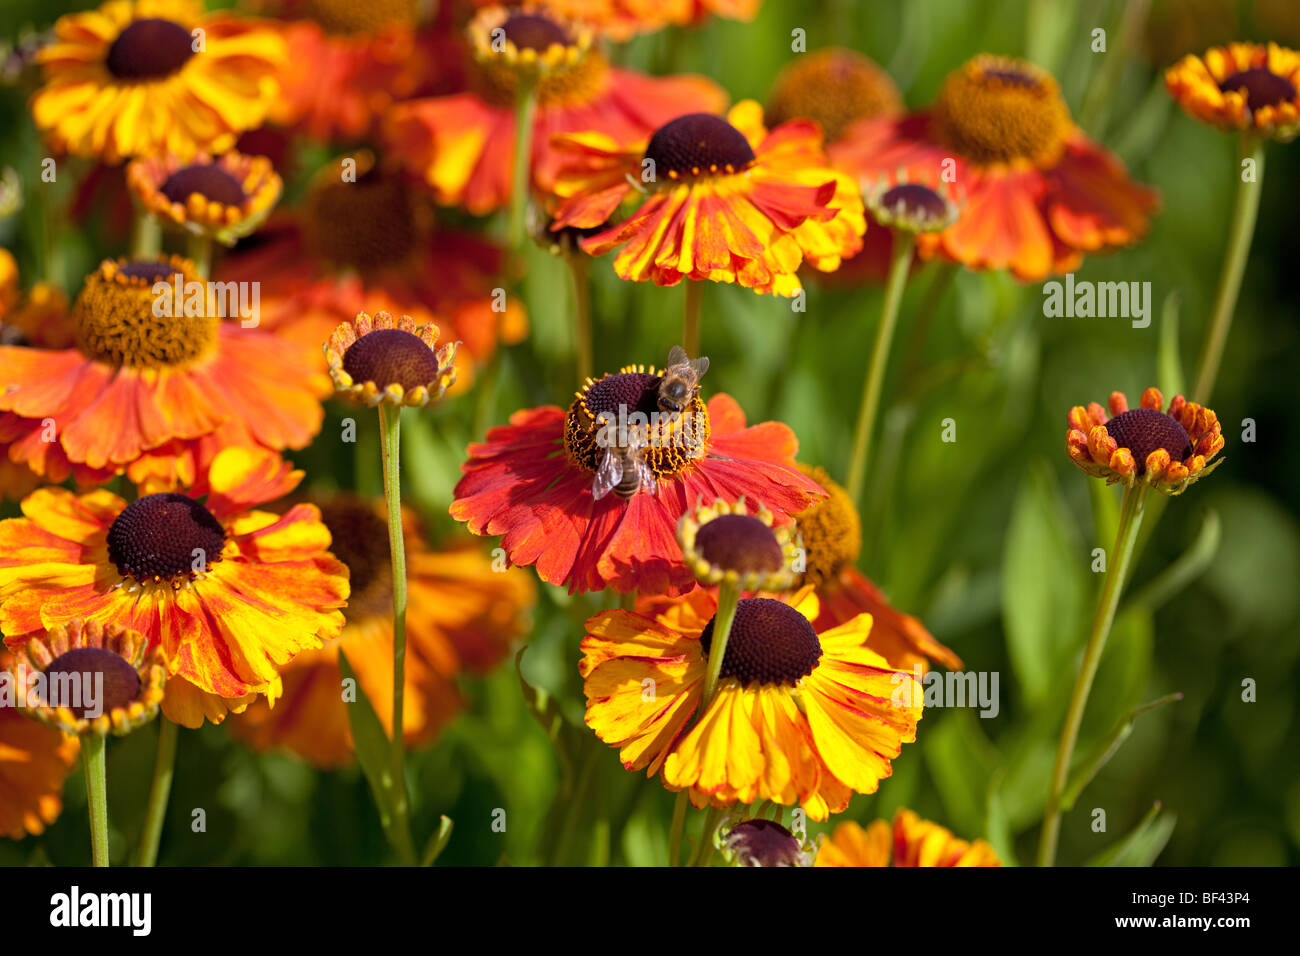 Helenium (Helen's flower) - Helenium Rubinzwerg orange vif, et jaunes, la fin de l'été magnifique afficher Banque D'Images